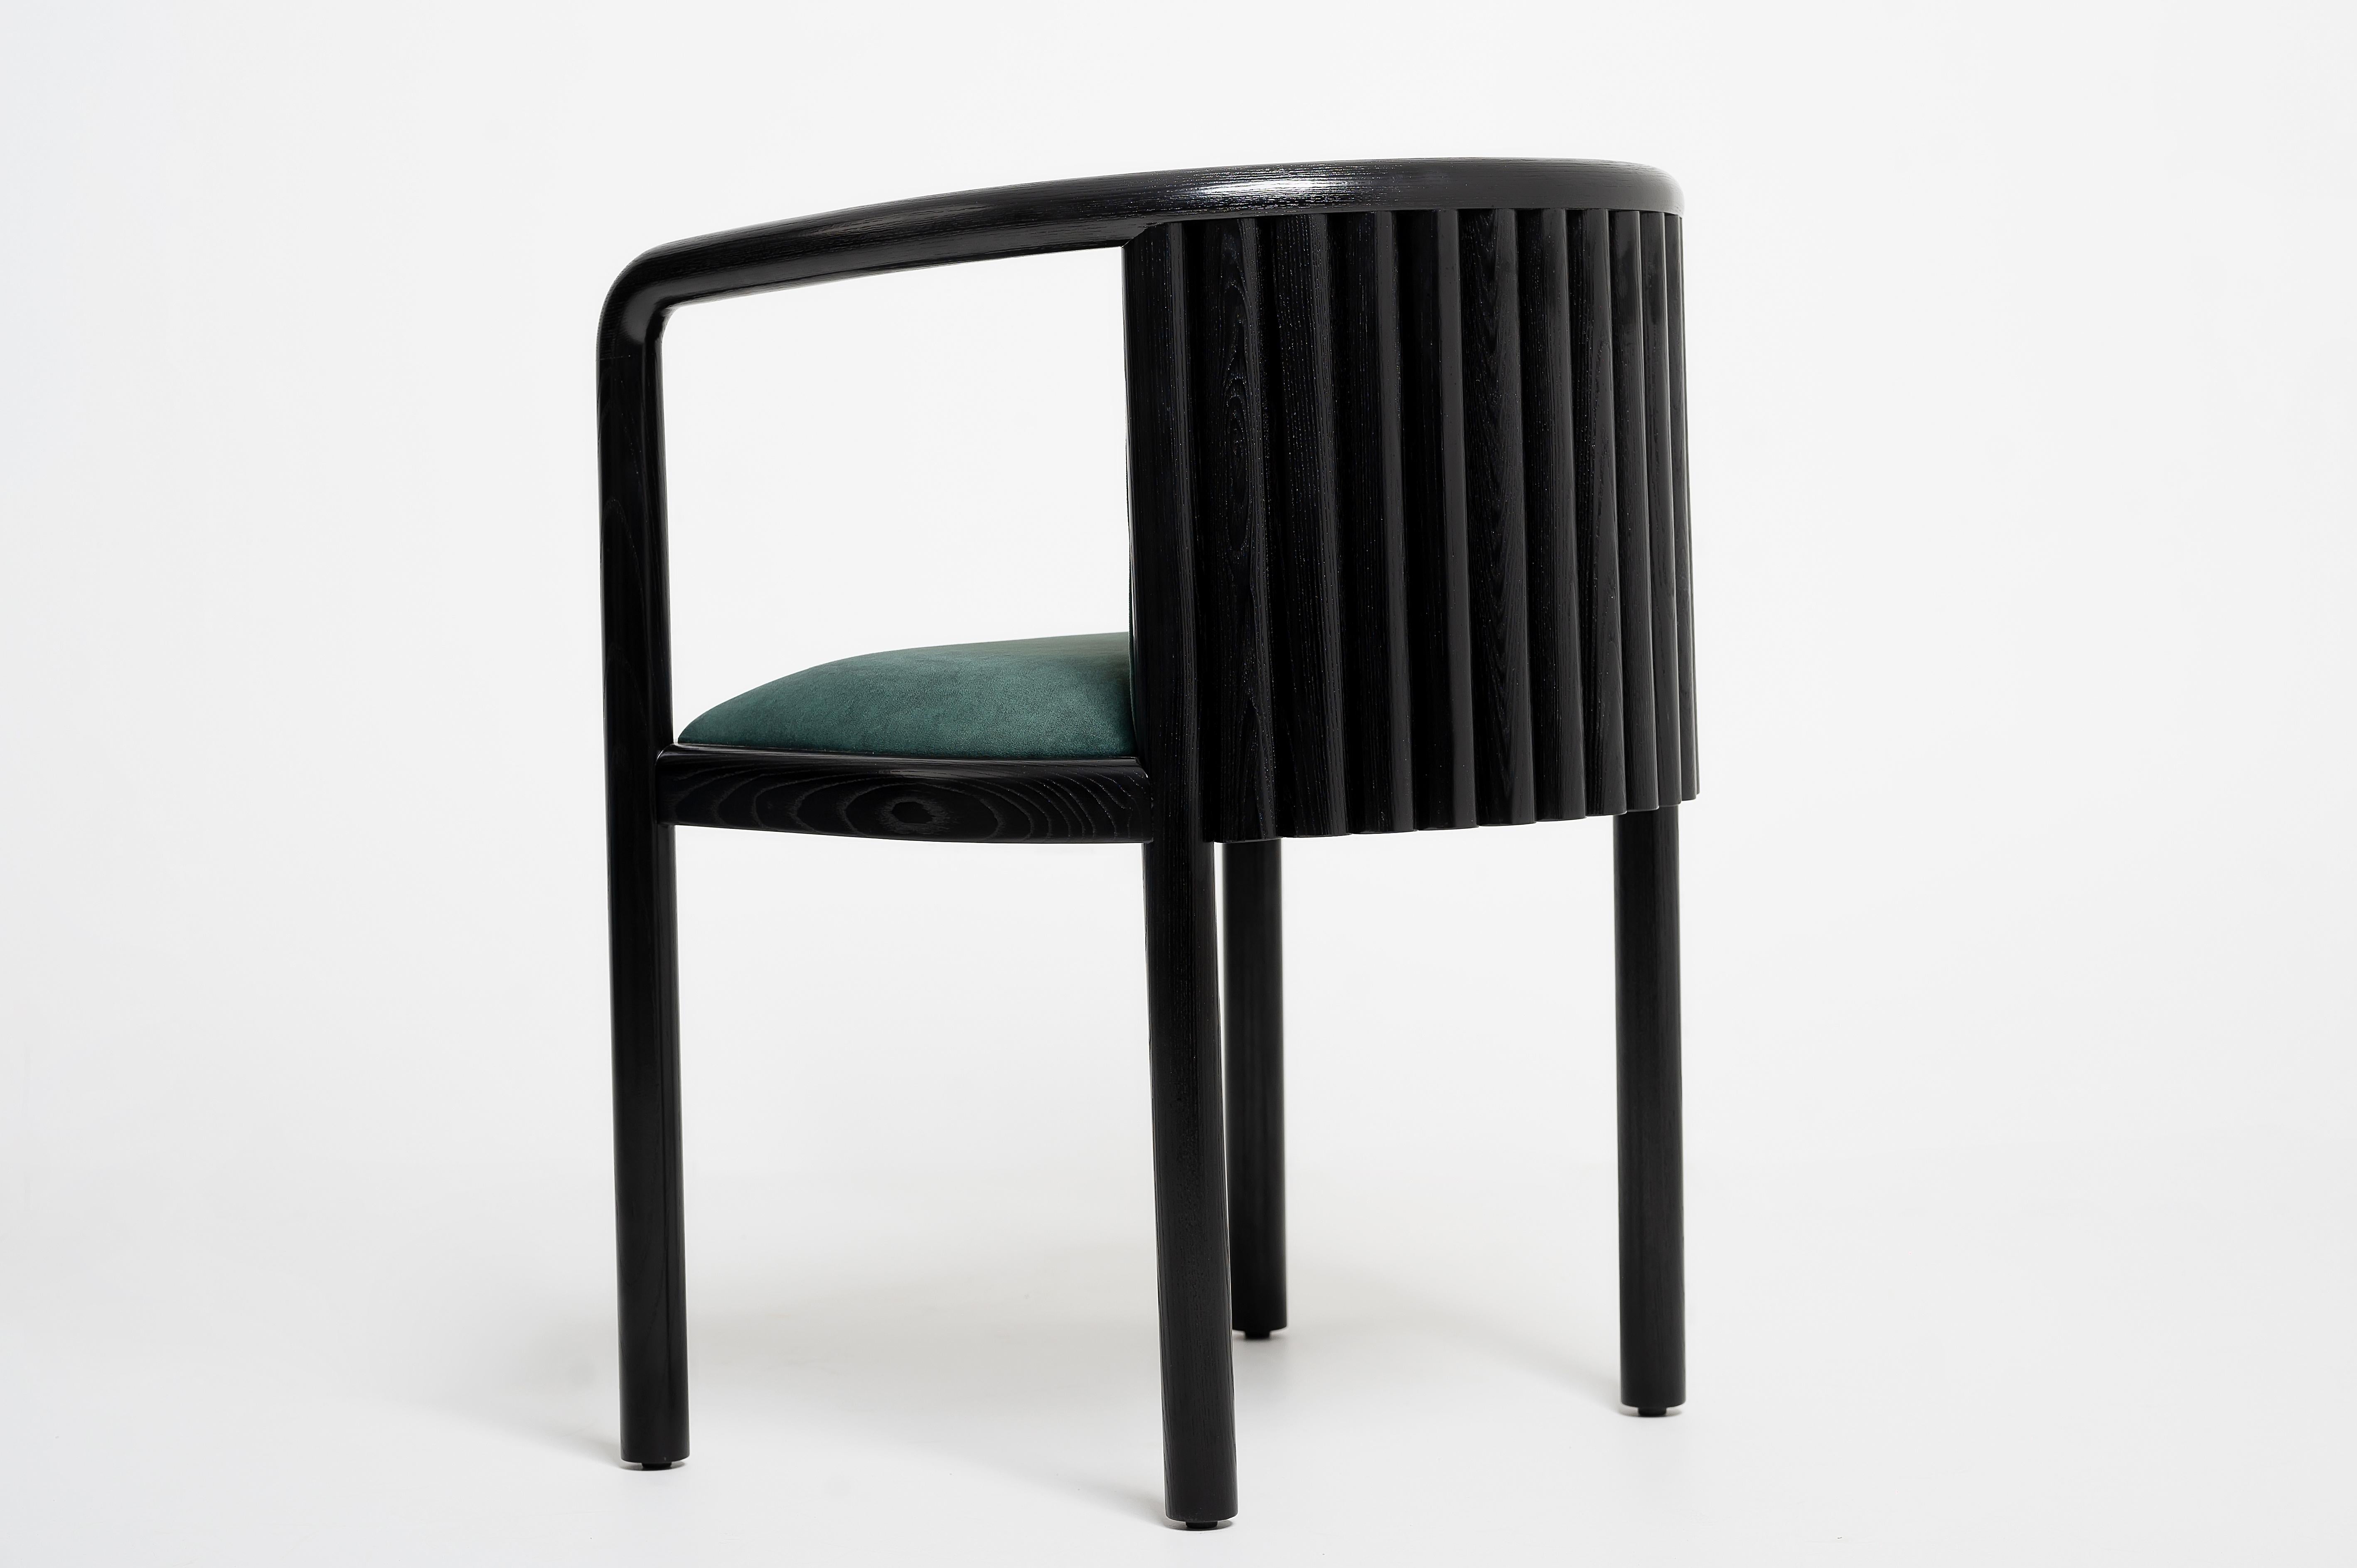 Voici la nouvelle et exclusive chaise de salle à manger Alton. Ce design unique et moderne du milieu du siècle associe le bois de frêne le plus fin, fabriqué par notre artisan moldave expert, à un style sur mesure absolument époustouflant.